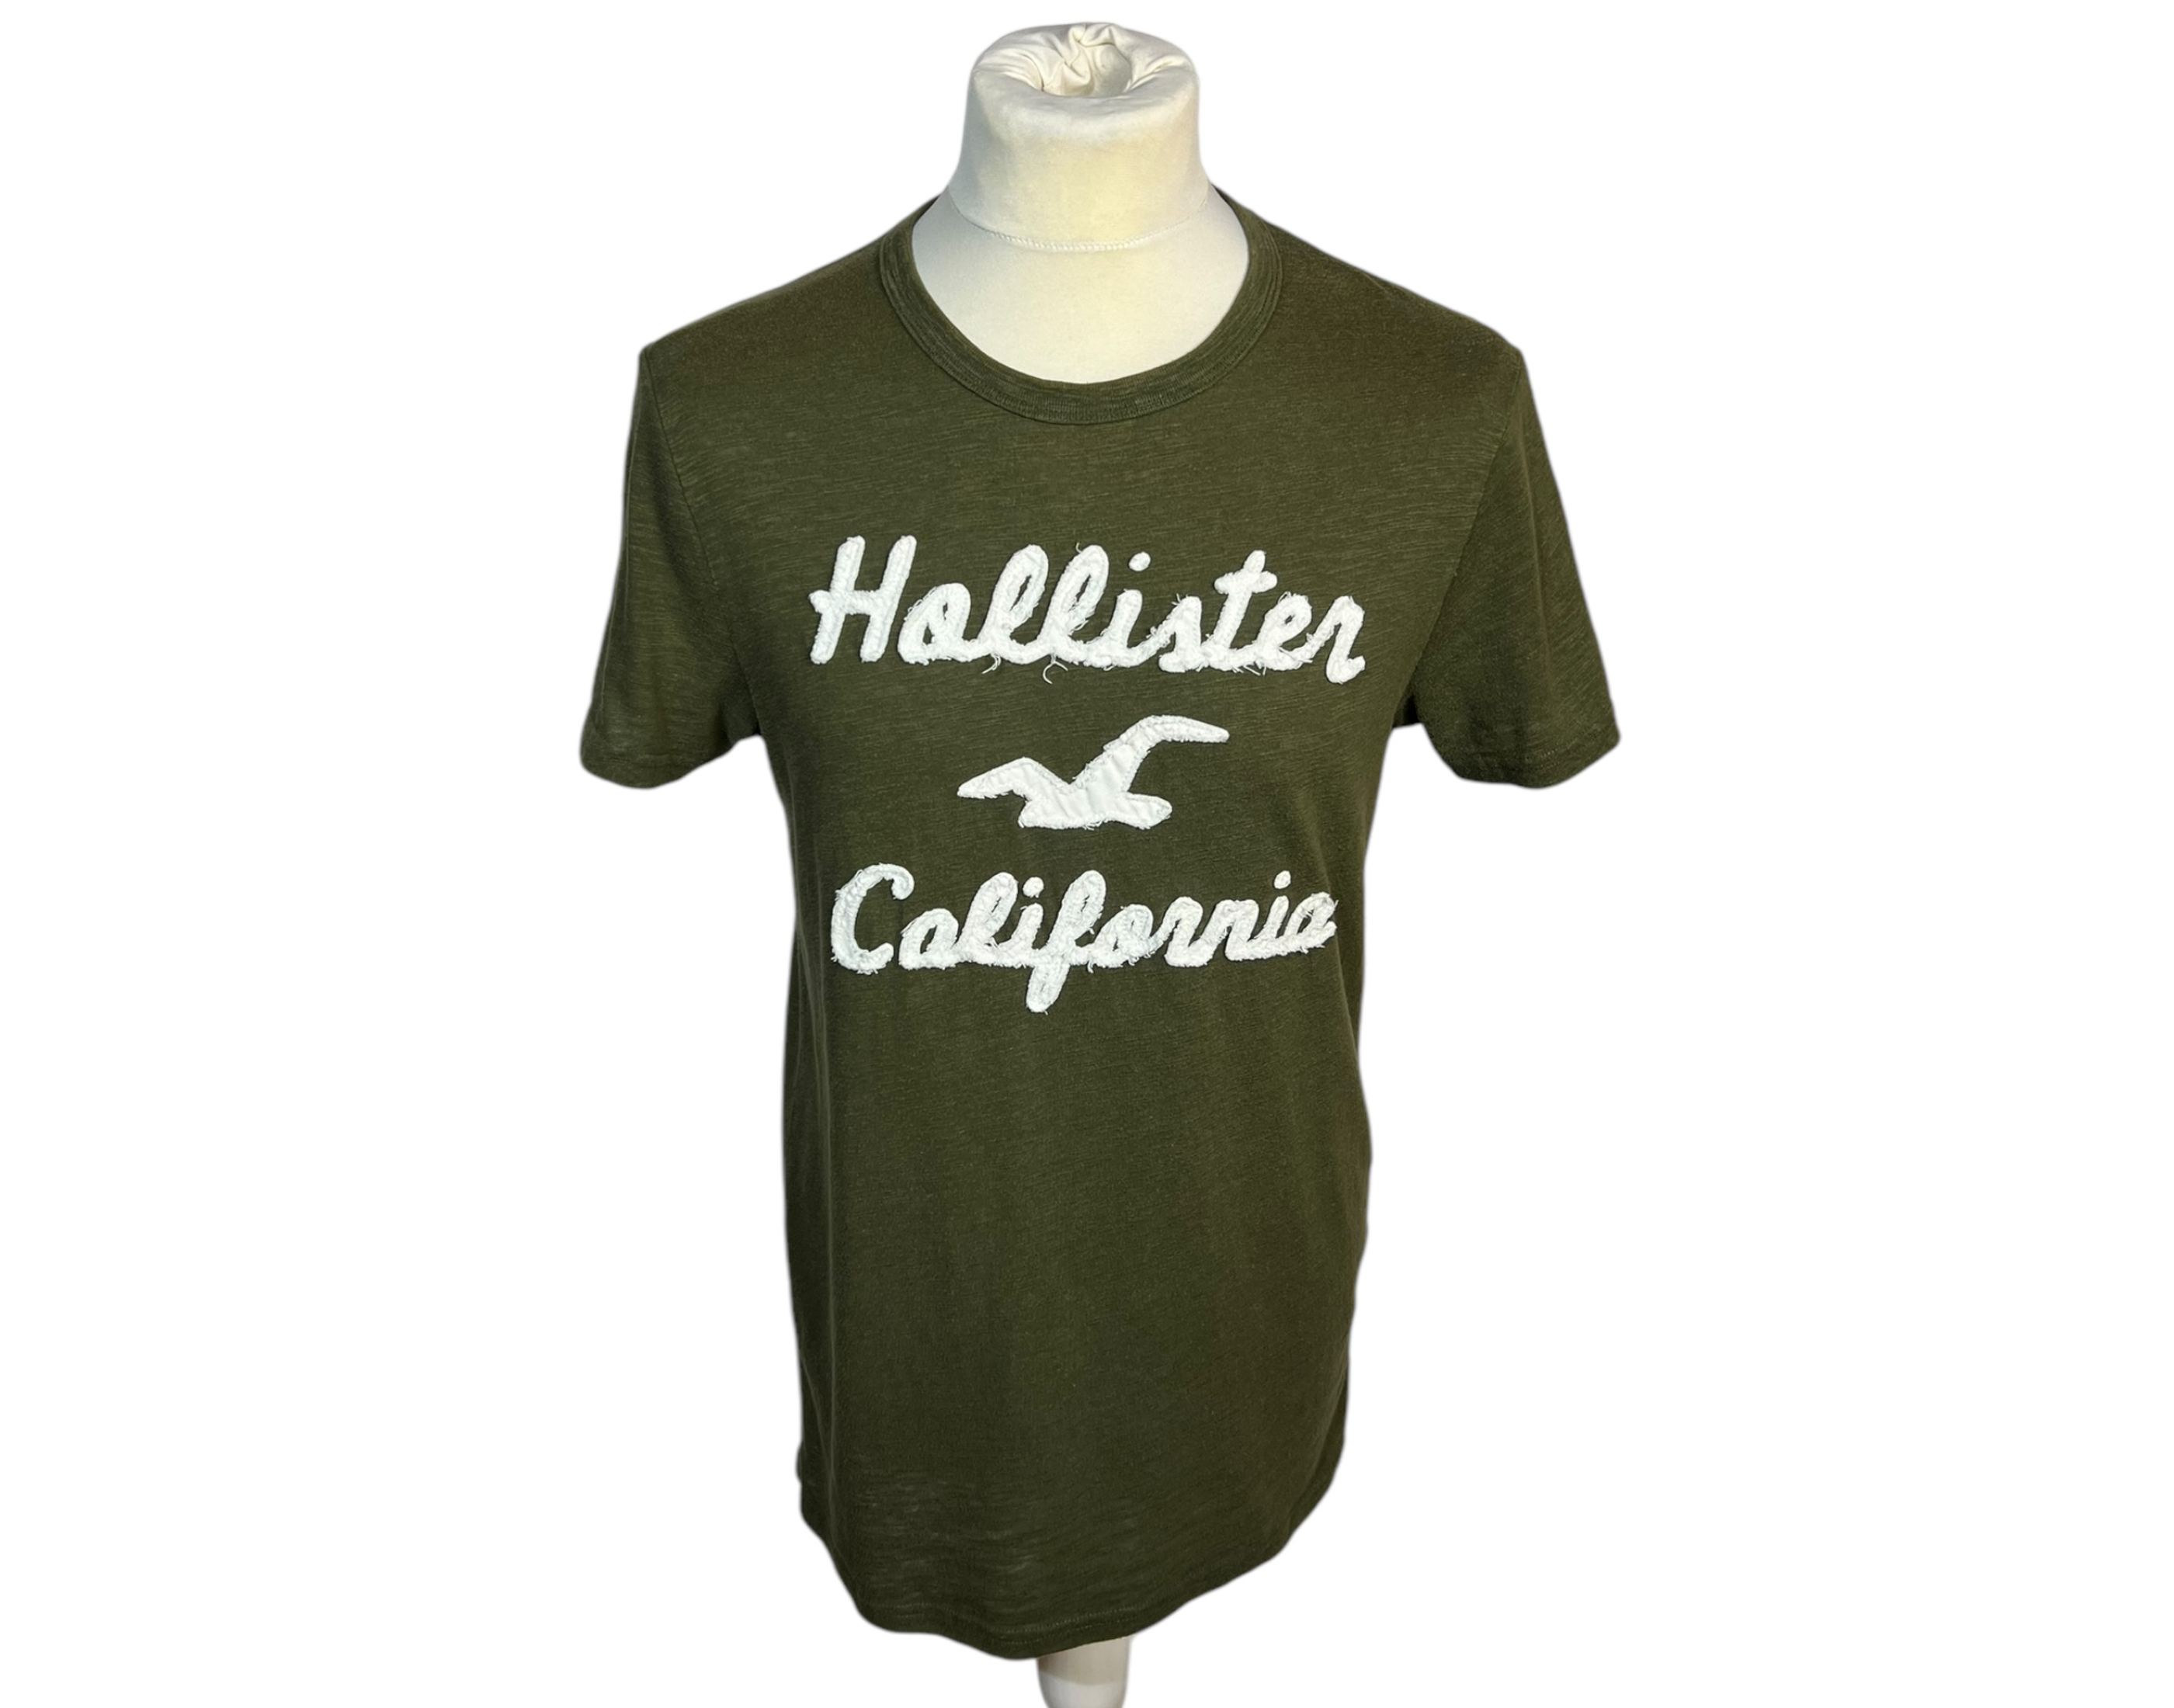 Hollister póló (M)